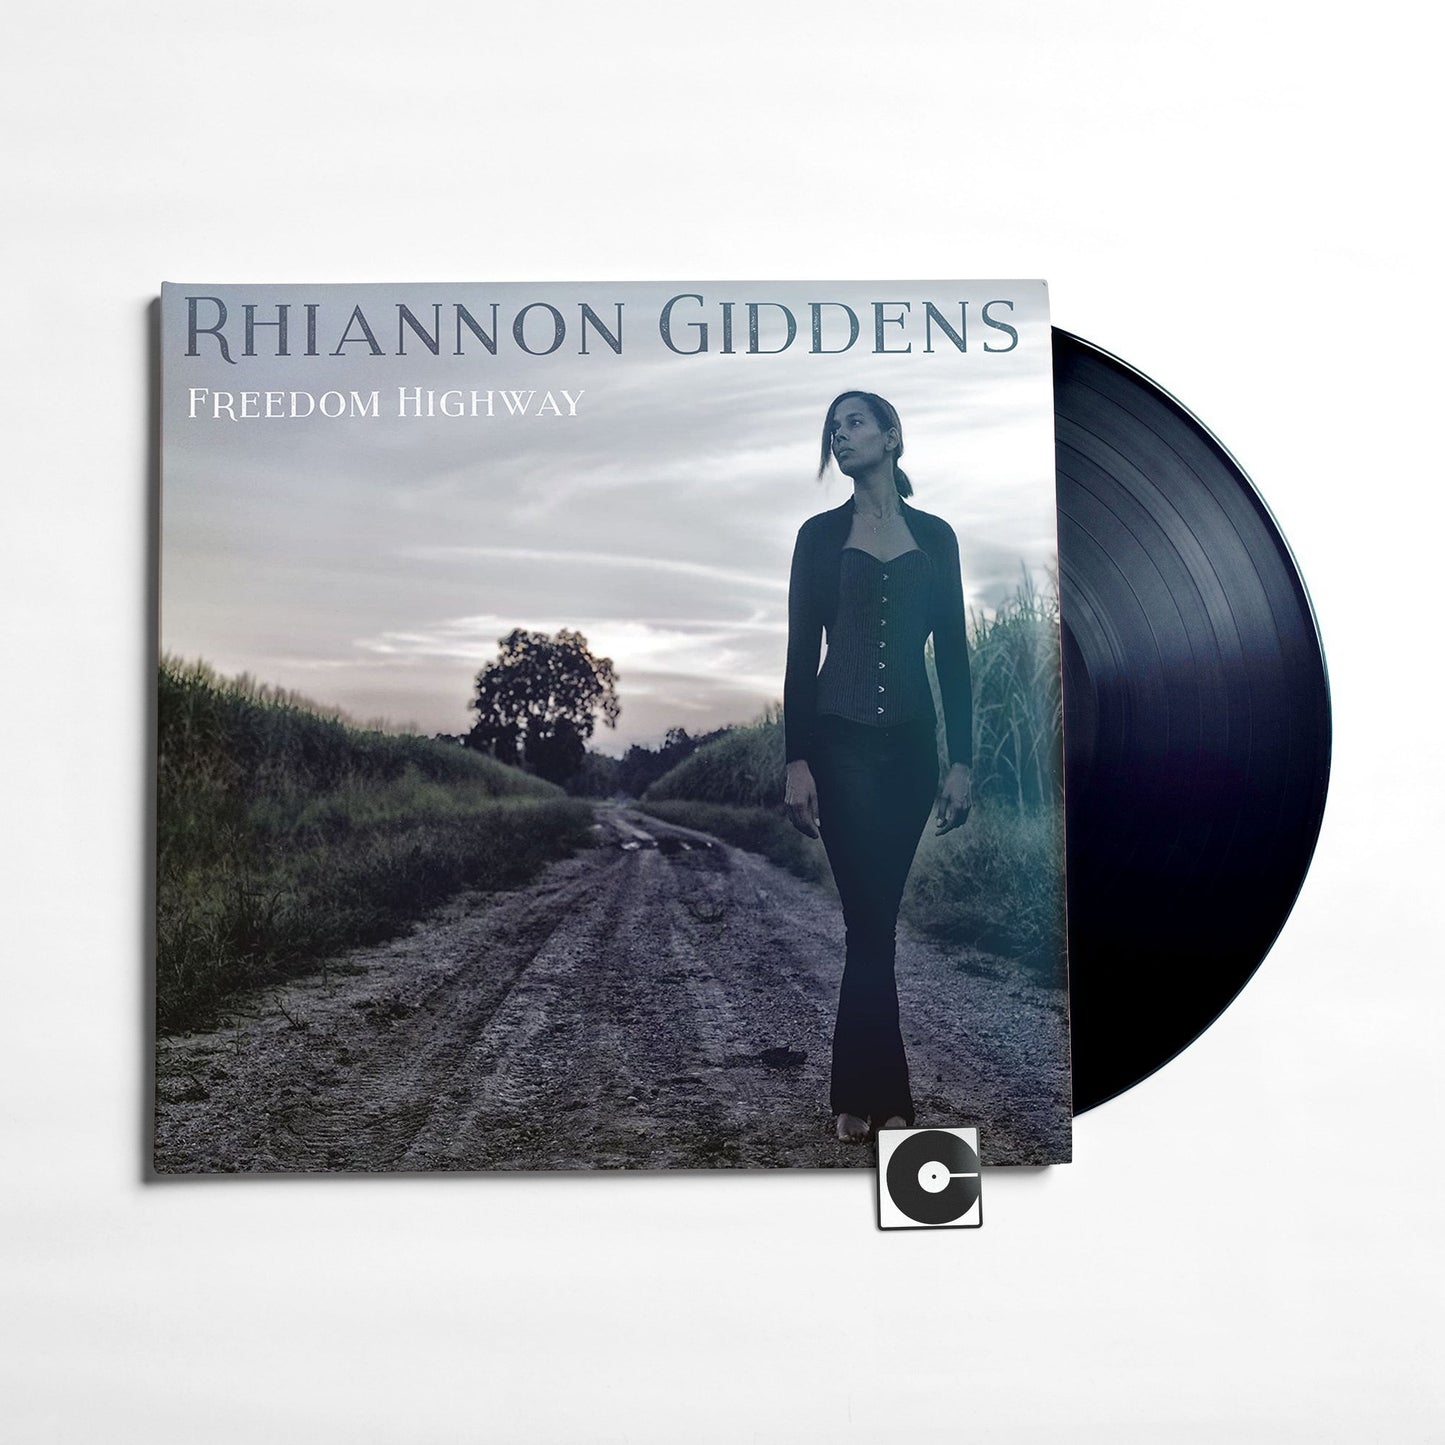 Rhiannon Giddens - "Freedom Highway"